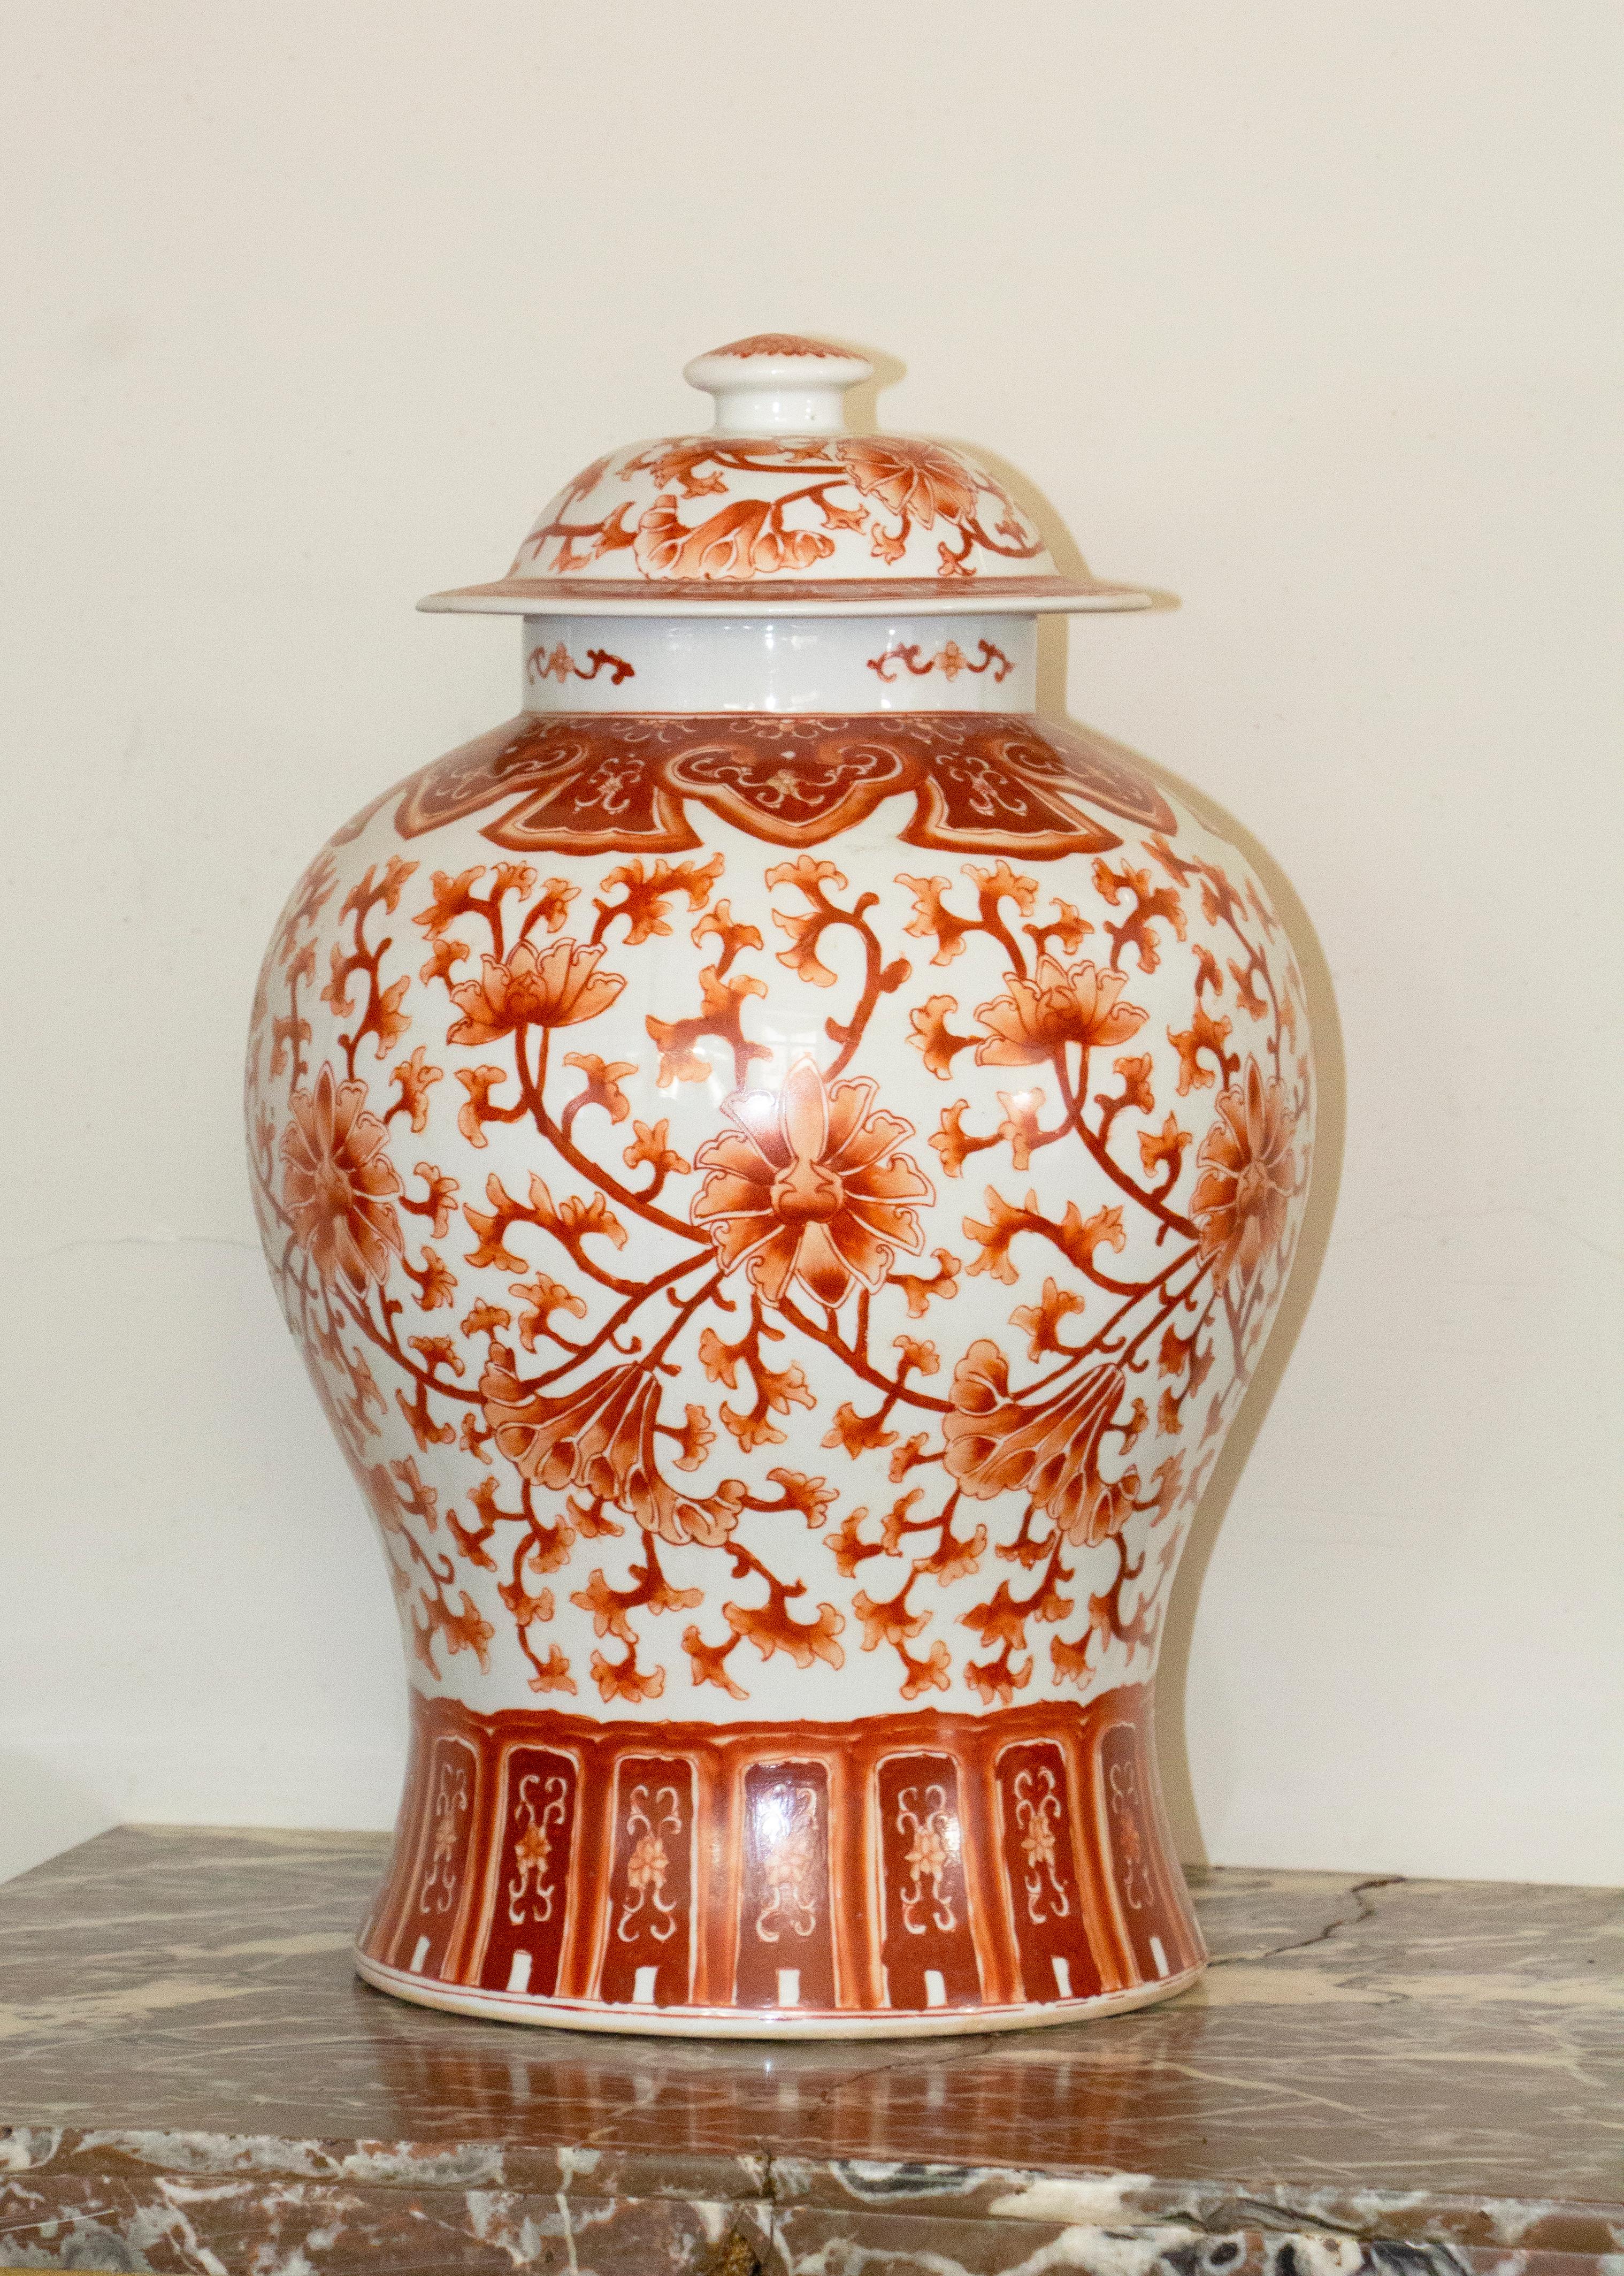 Paire de grandes jarres couvertes en porcelaine de forme balustre à décor de fleurs de lotus, rouge fer.
Période Qing
19ème siècle.
     